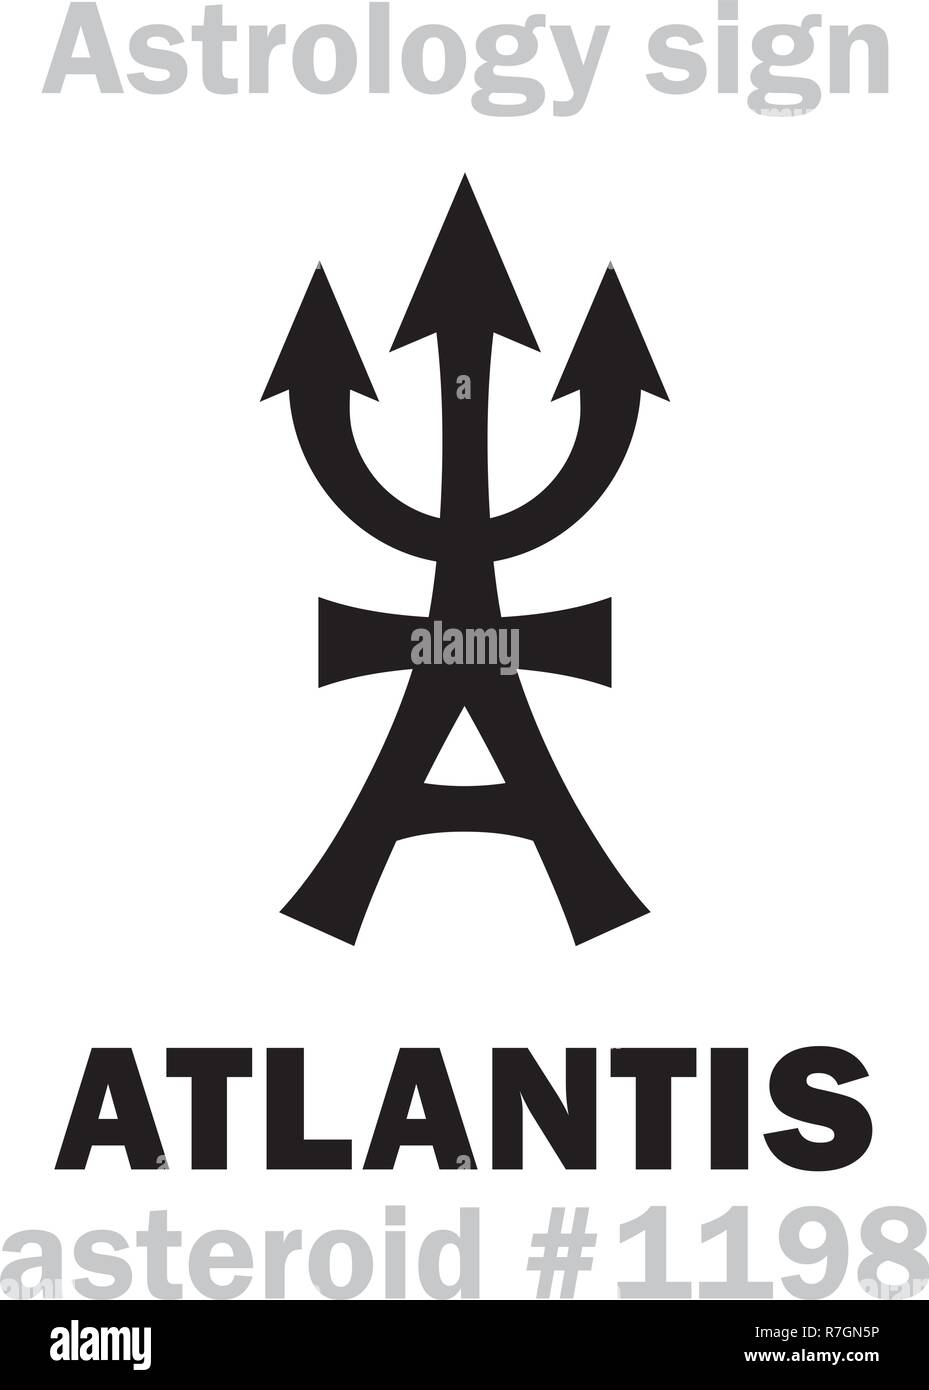 Alfabeto astrologia: Atlantis (antica civiltà leggendaria, continente perduto nelle profondità del mare, la fattoria di Poseidon), asteroide #1198. Hierog Illustrazione Vettoriale